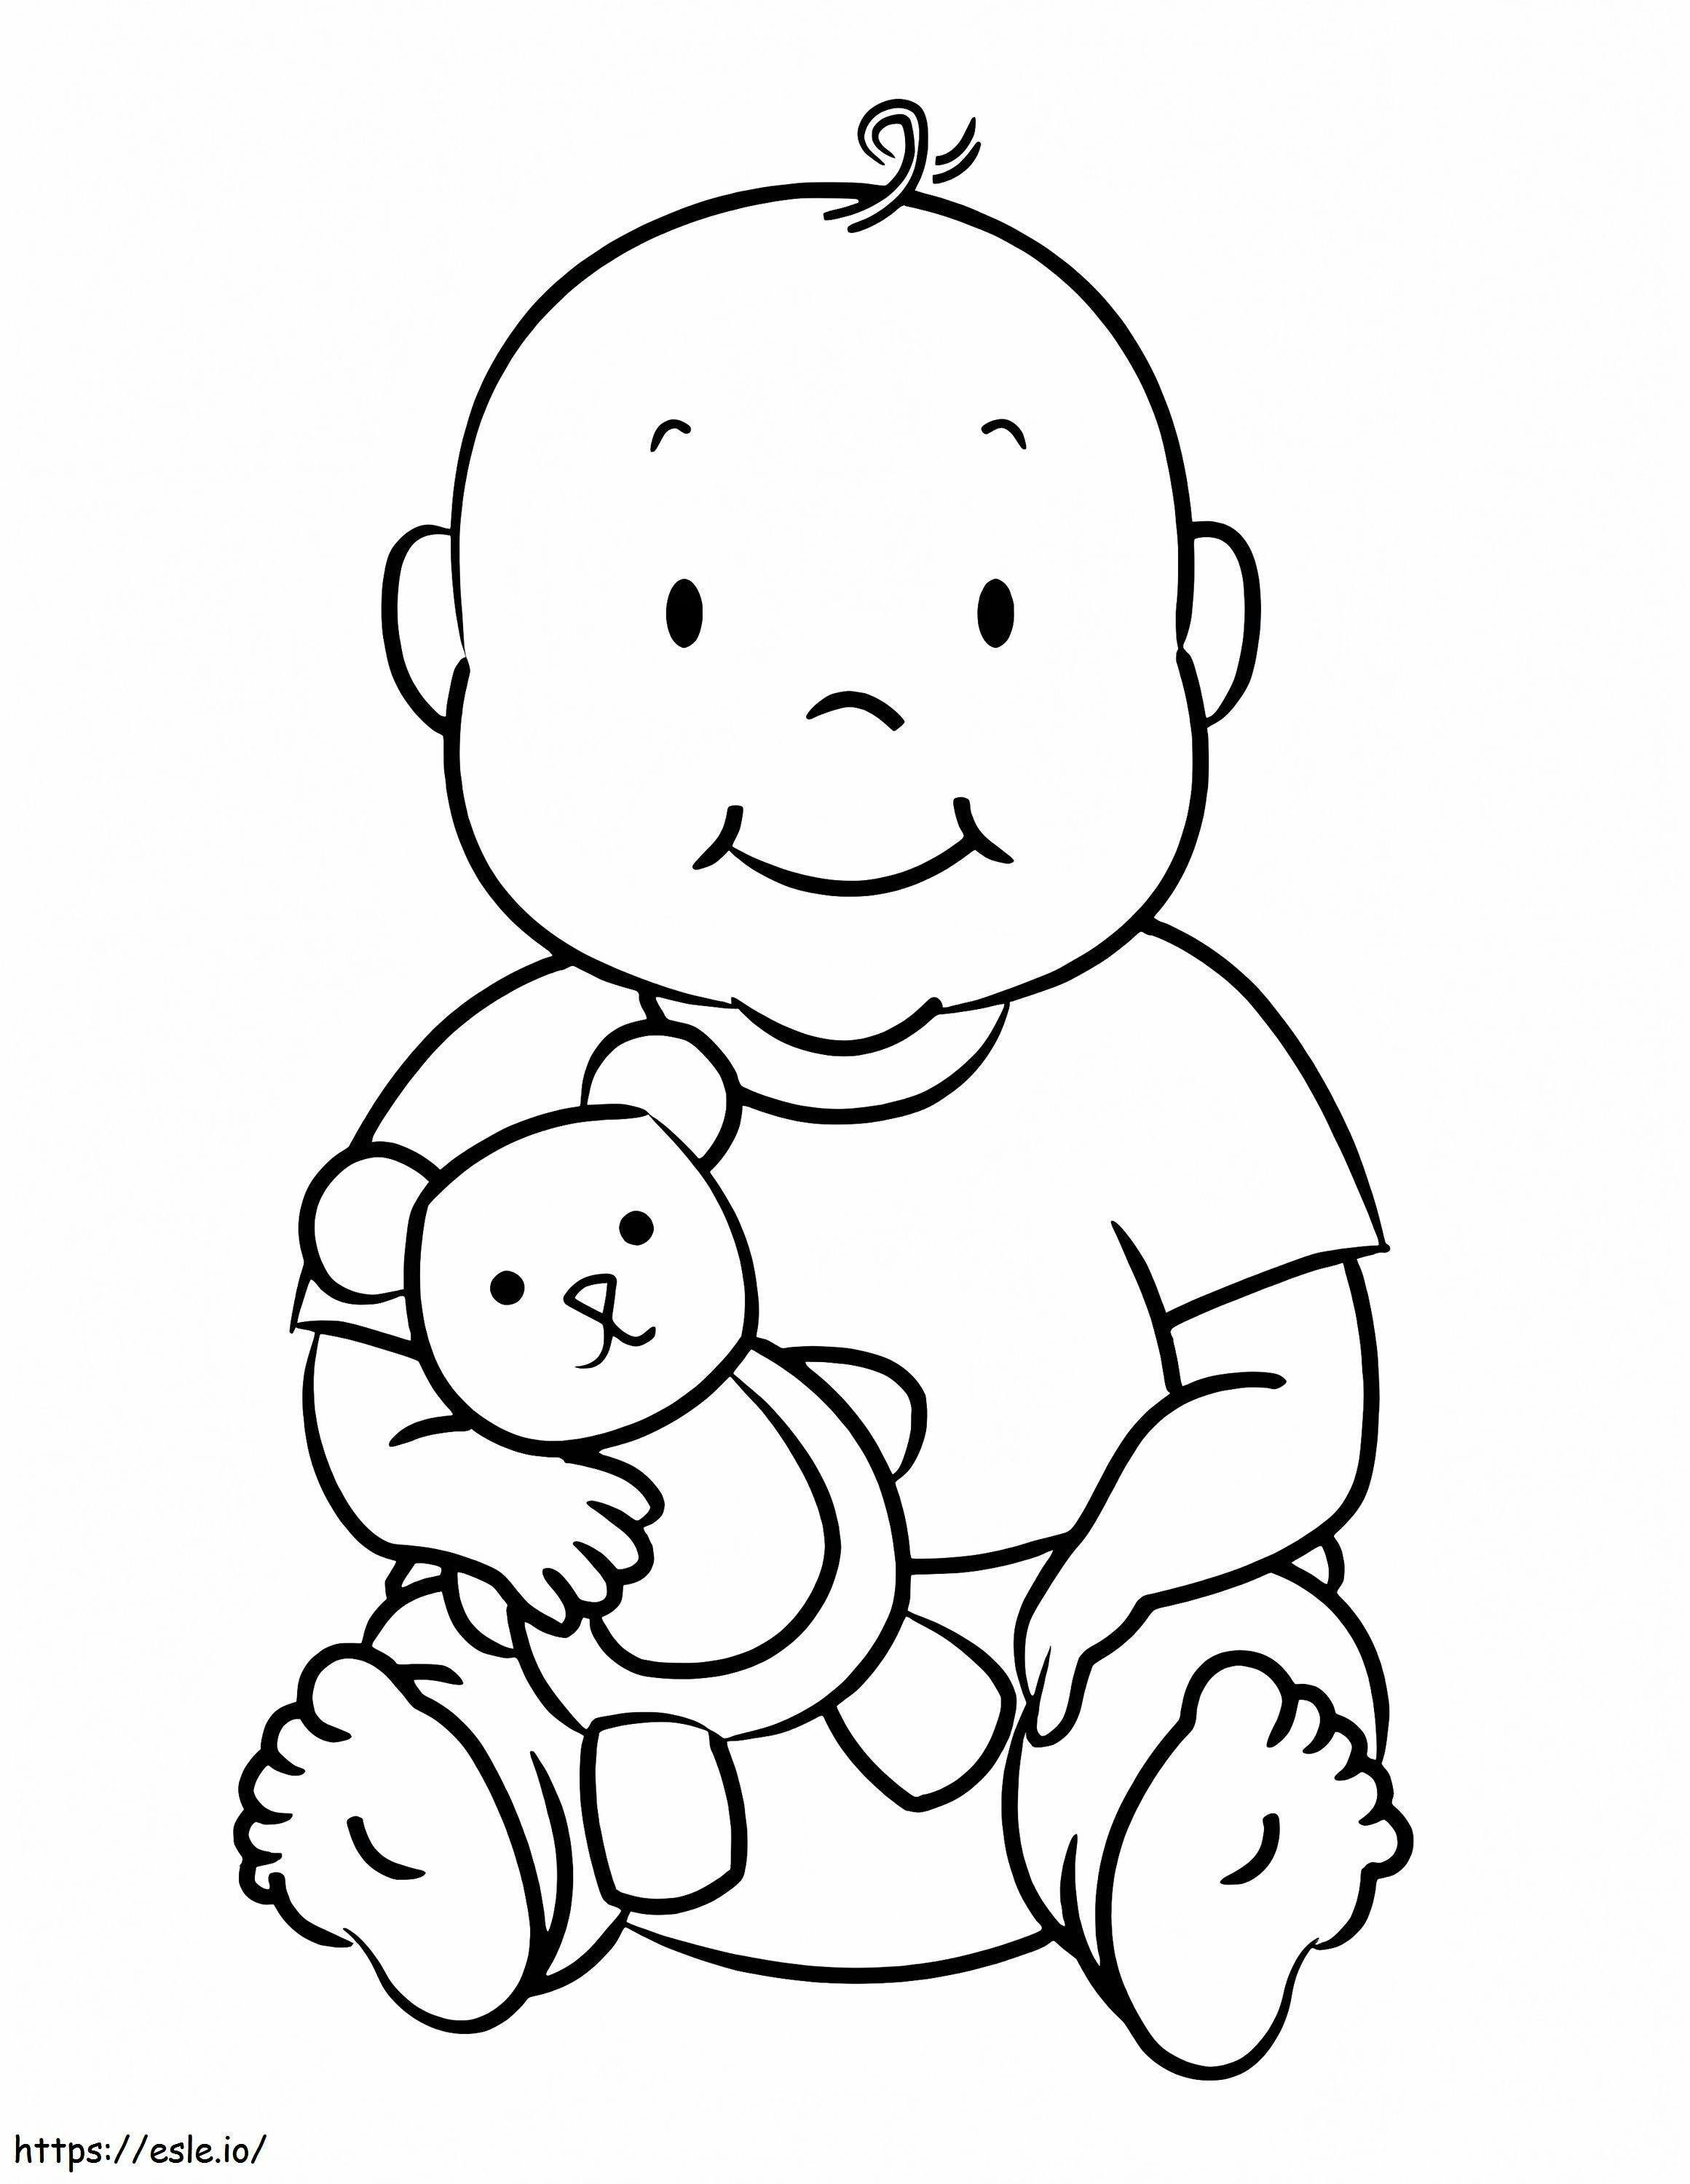 Bebek ve Teddy boyama